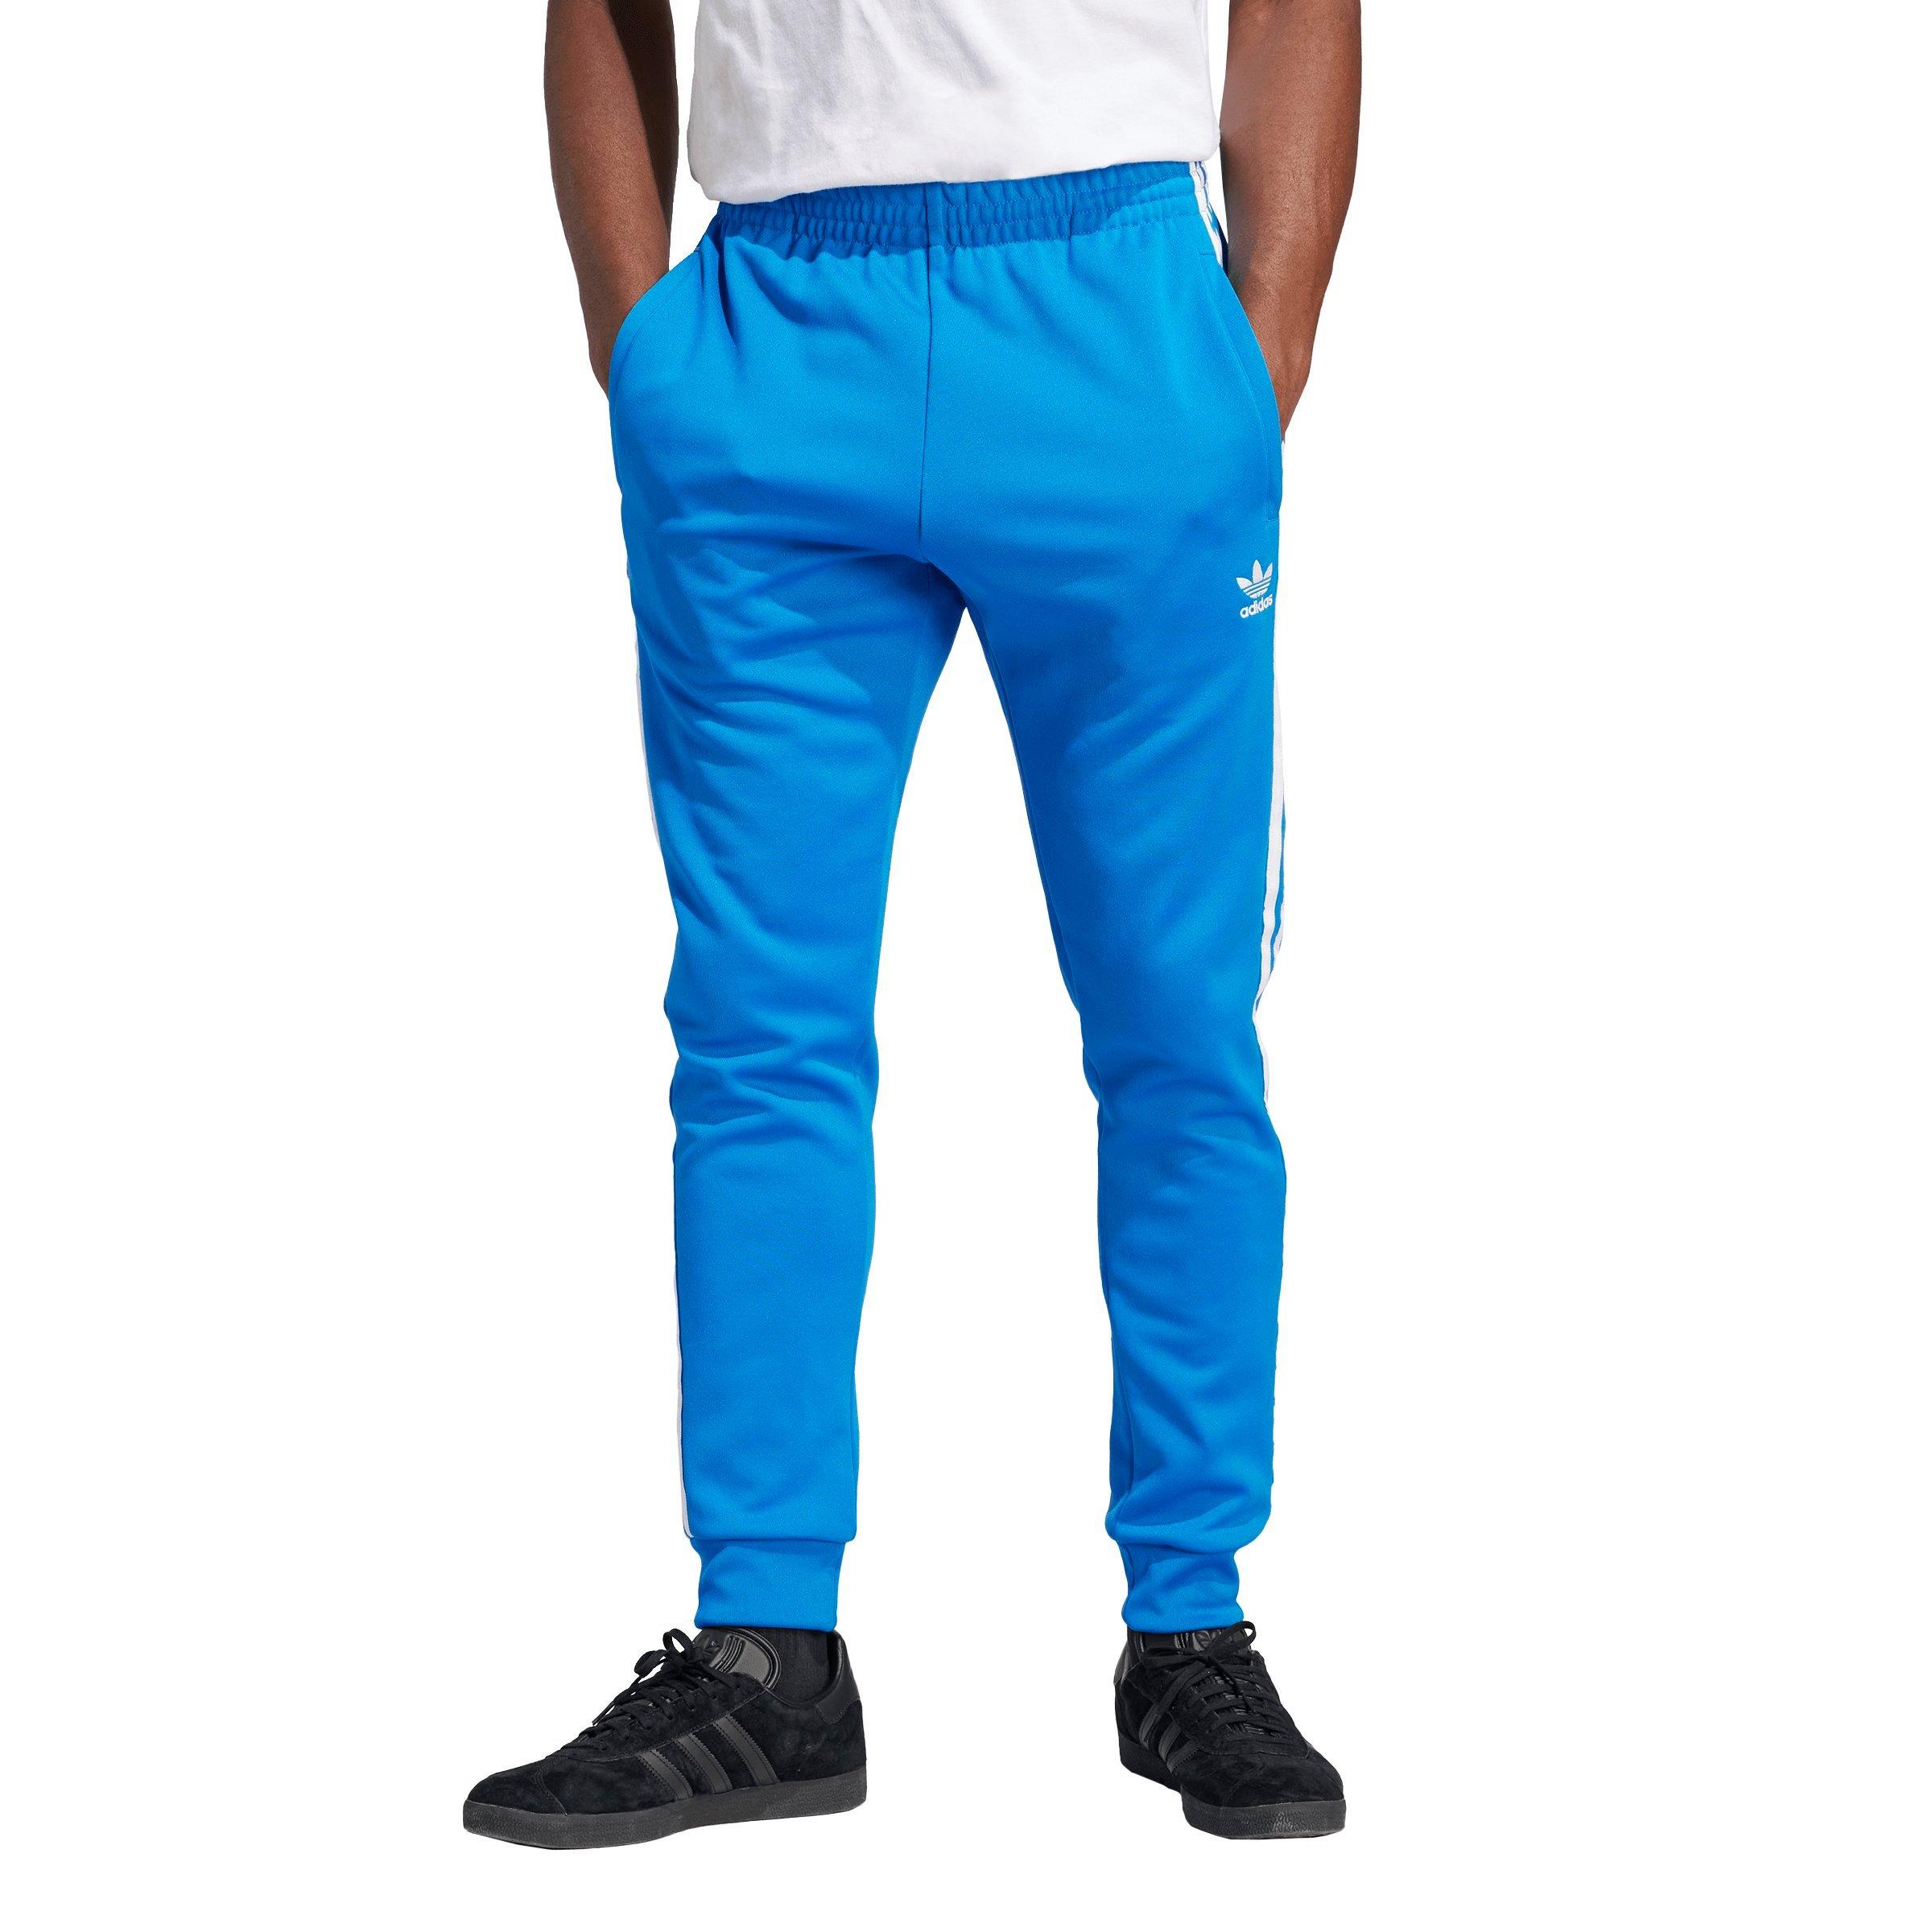 adidas Originals Blue Track Pants for Men